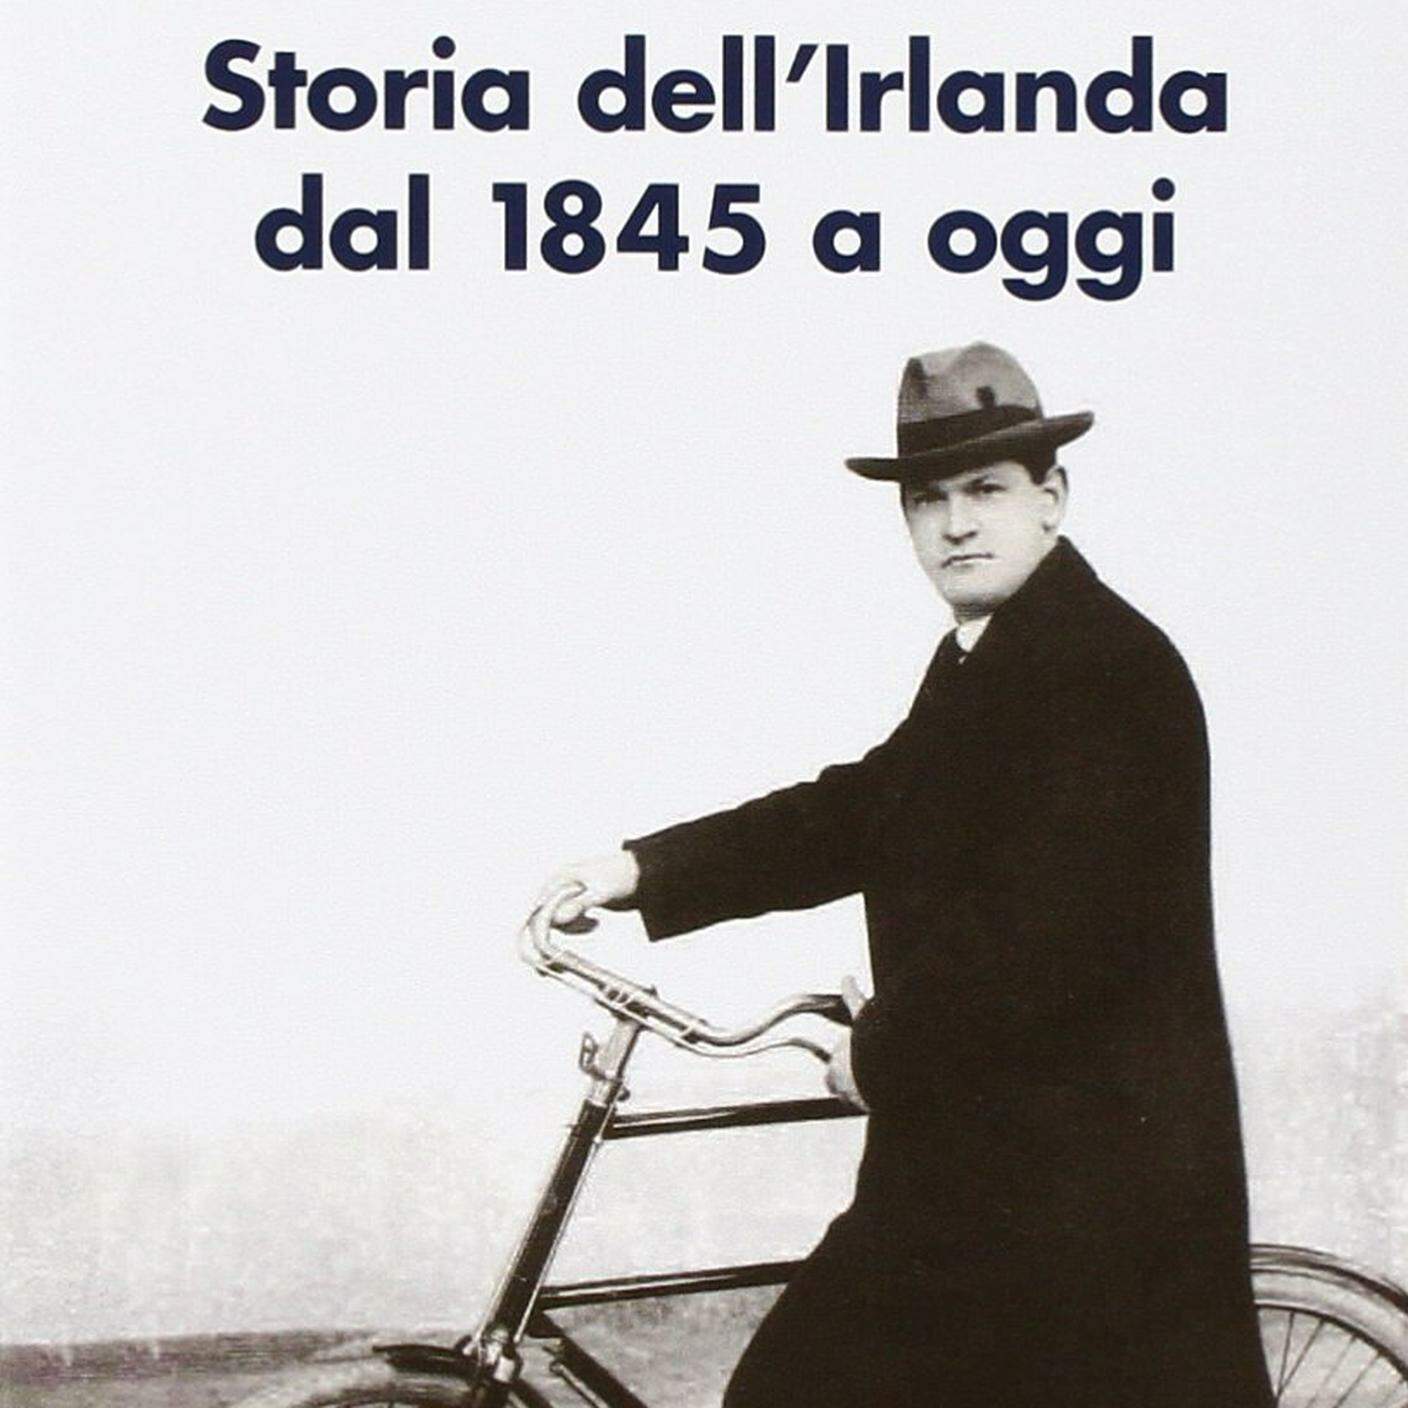 Eugenio Biagini, "Storia dell'Irlanda dal 1845 a oggi", il Mulino 